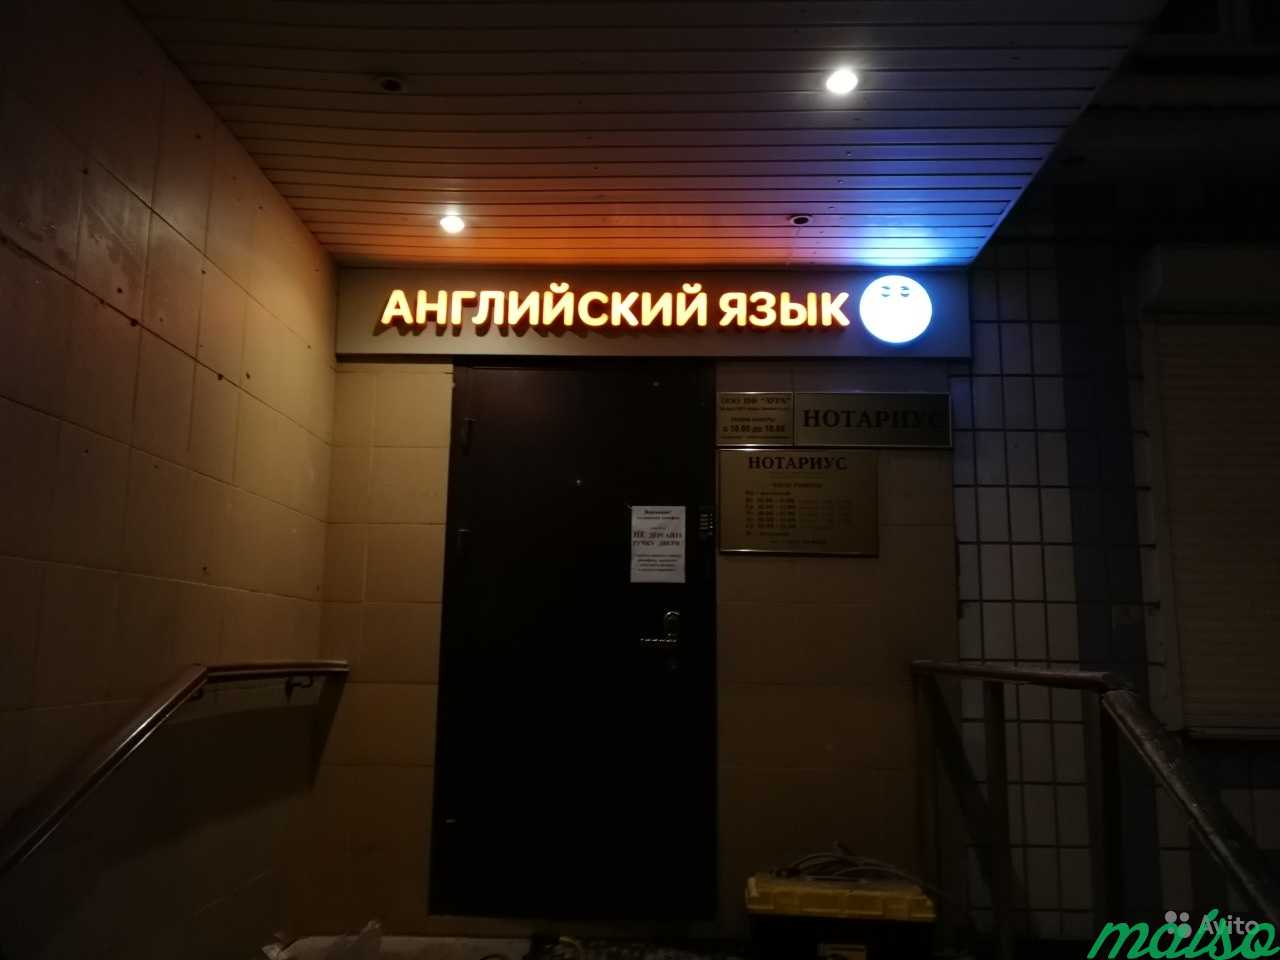 Вывеска Английский язык в Москве. Фото 6